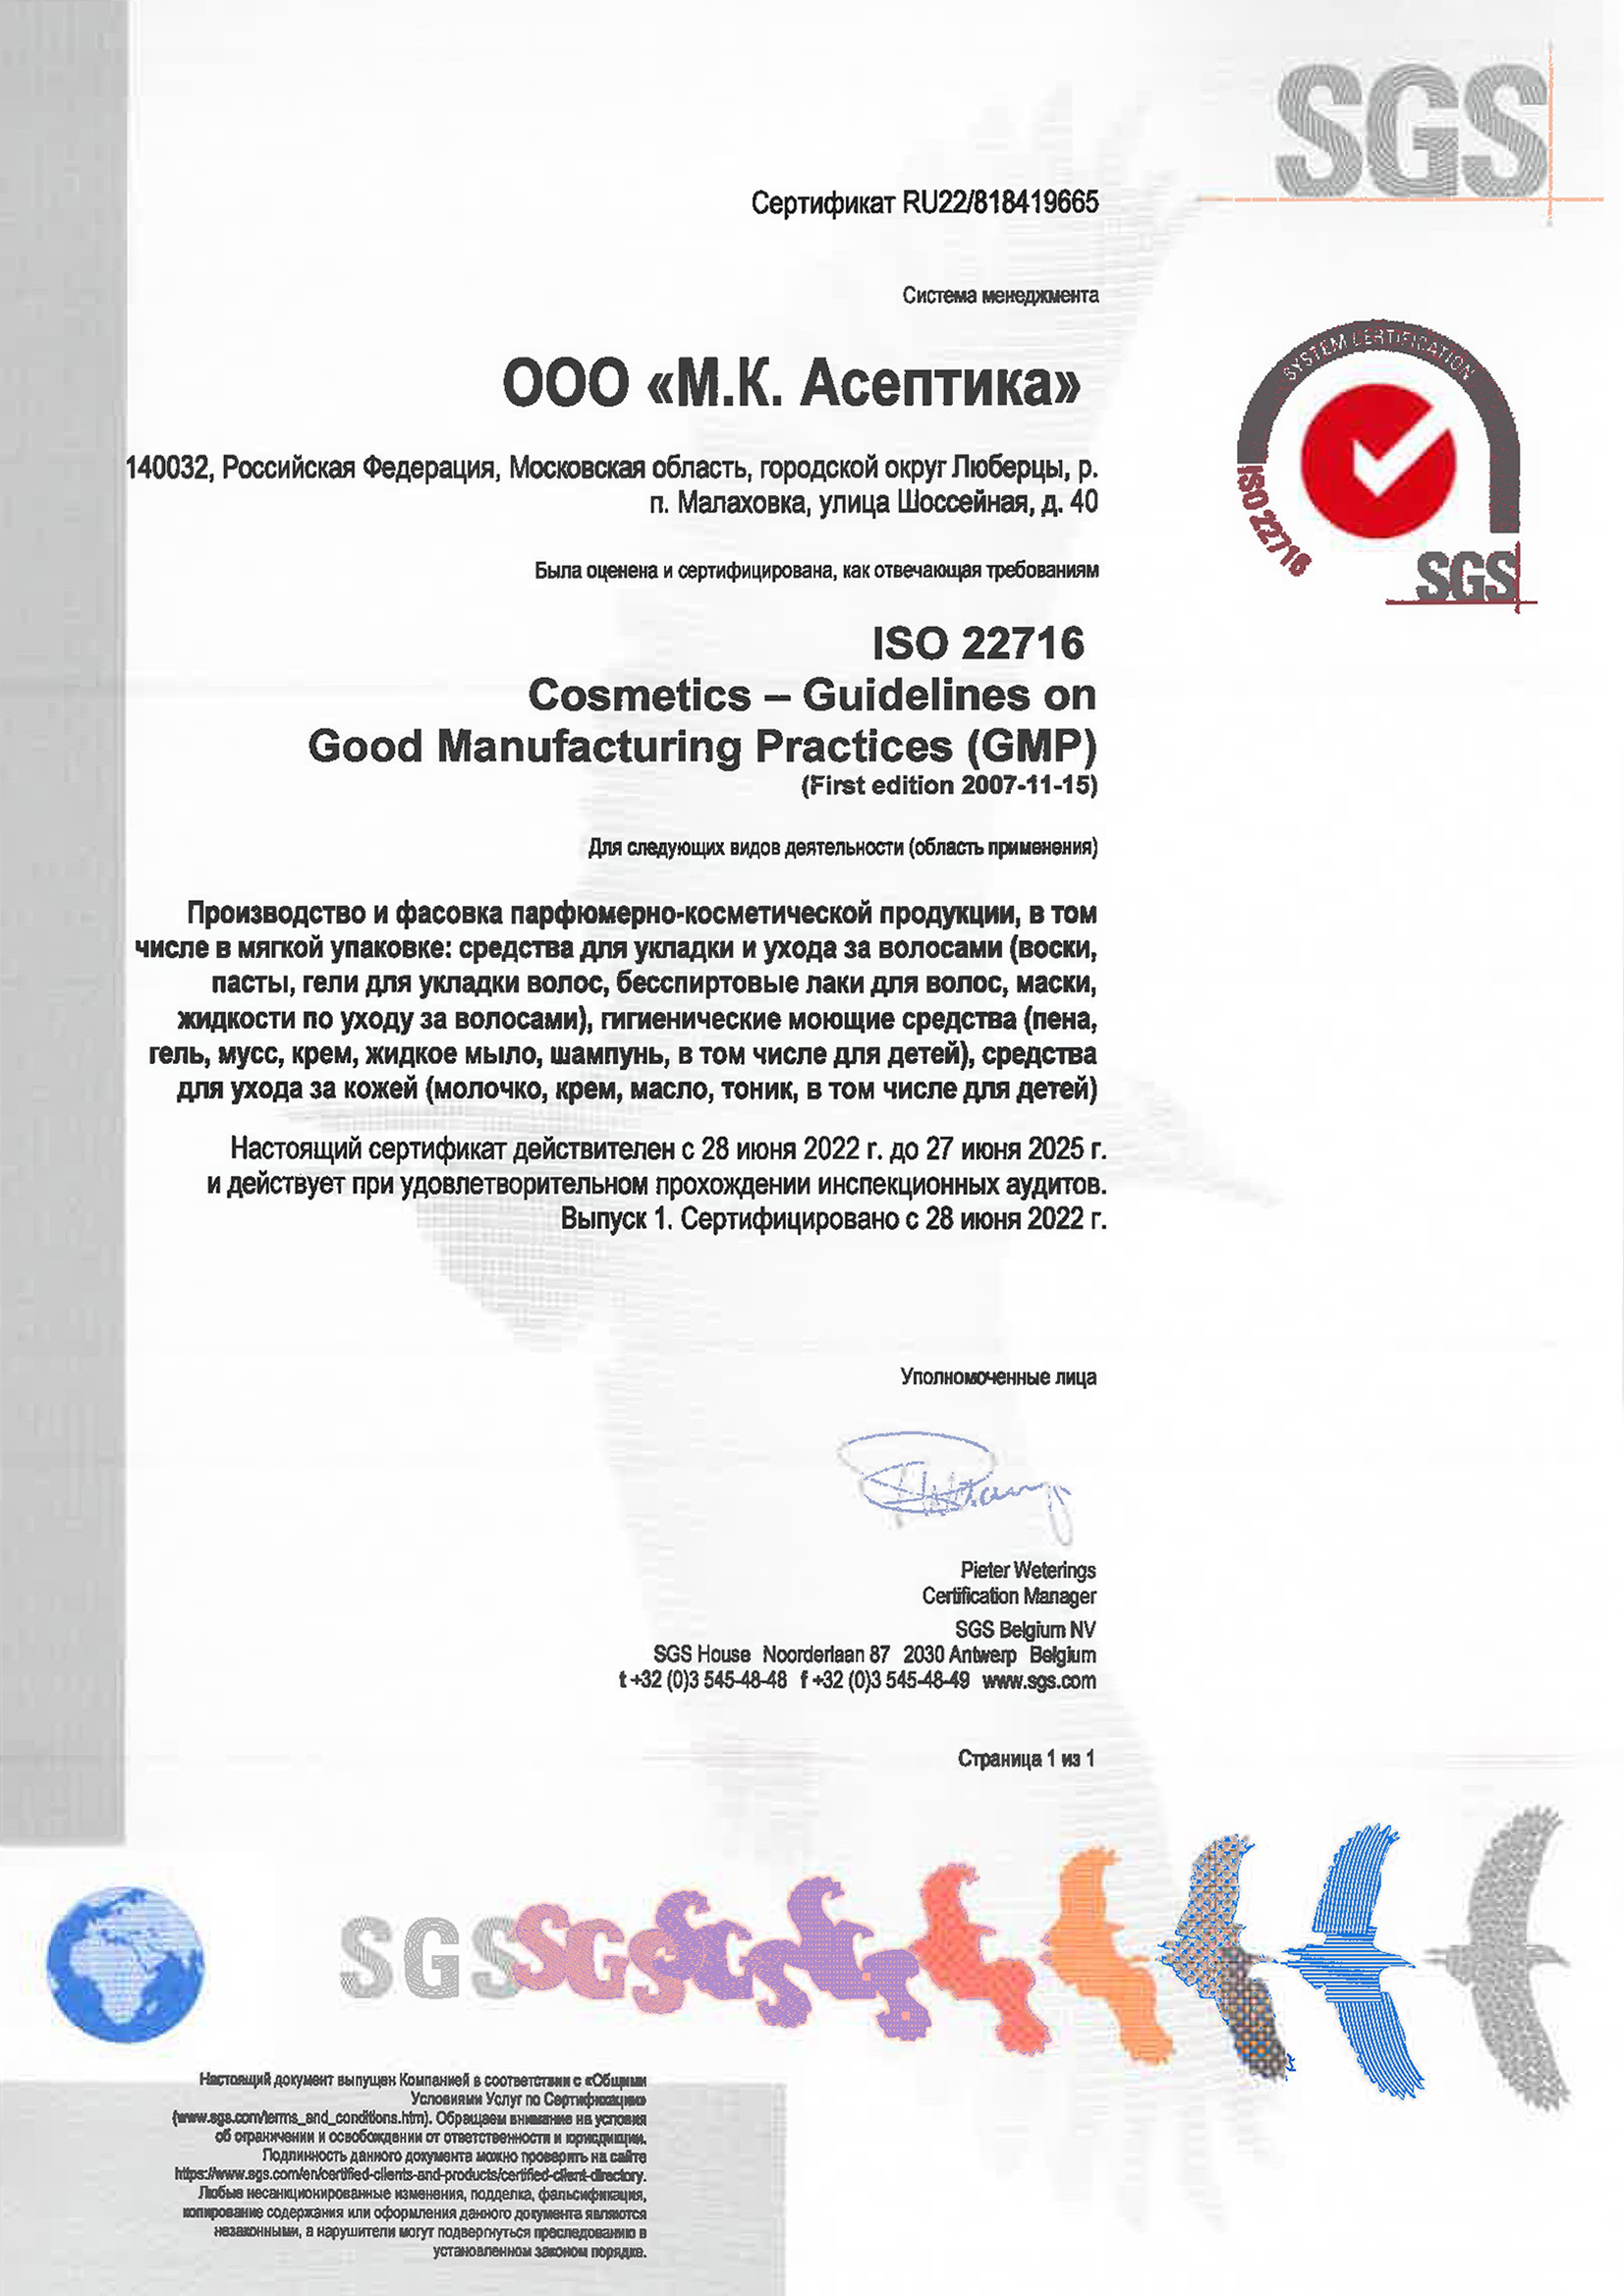 Сертификат качества GMP ISO 22716 (рус.)